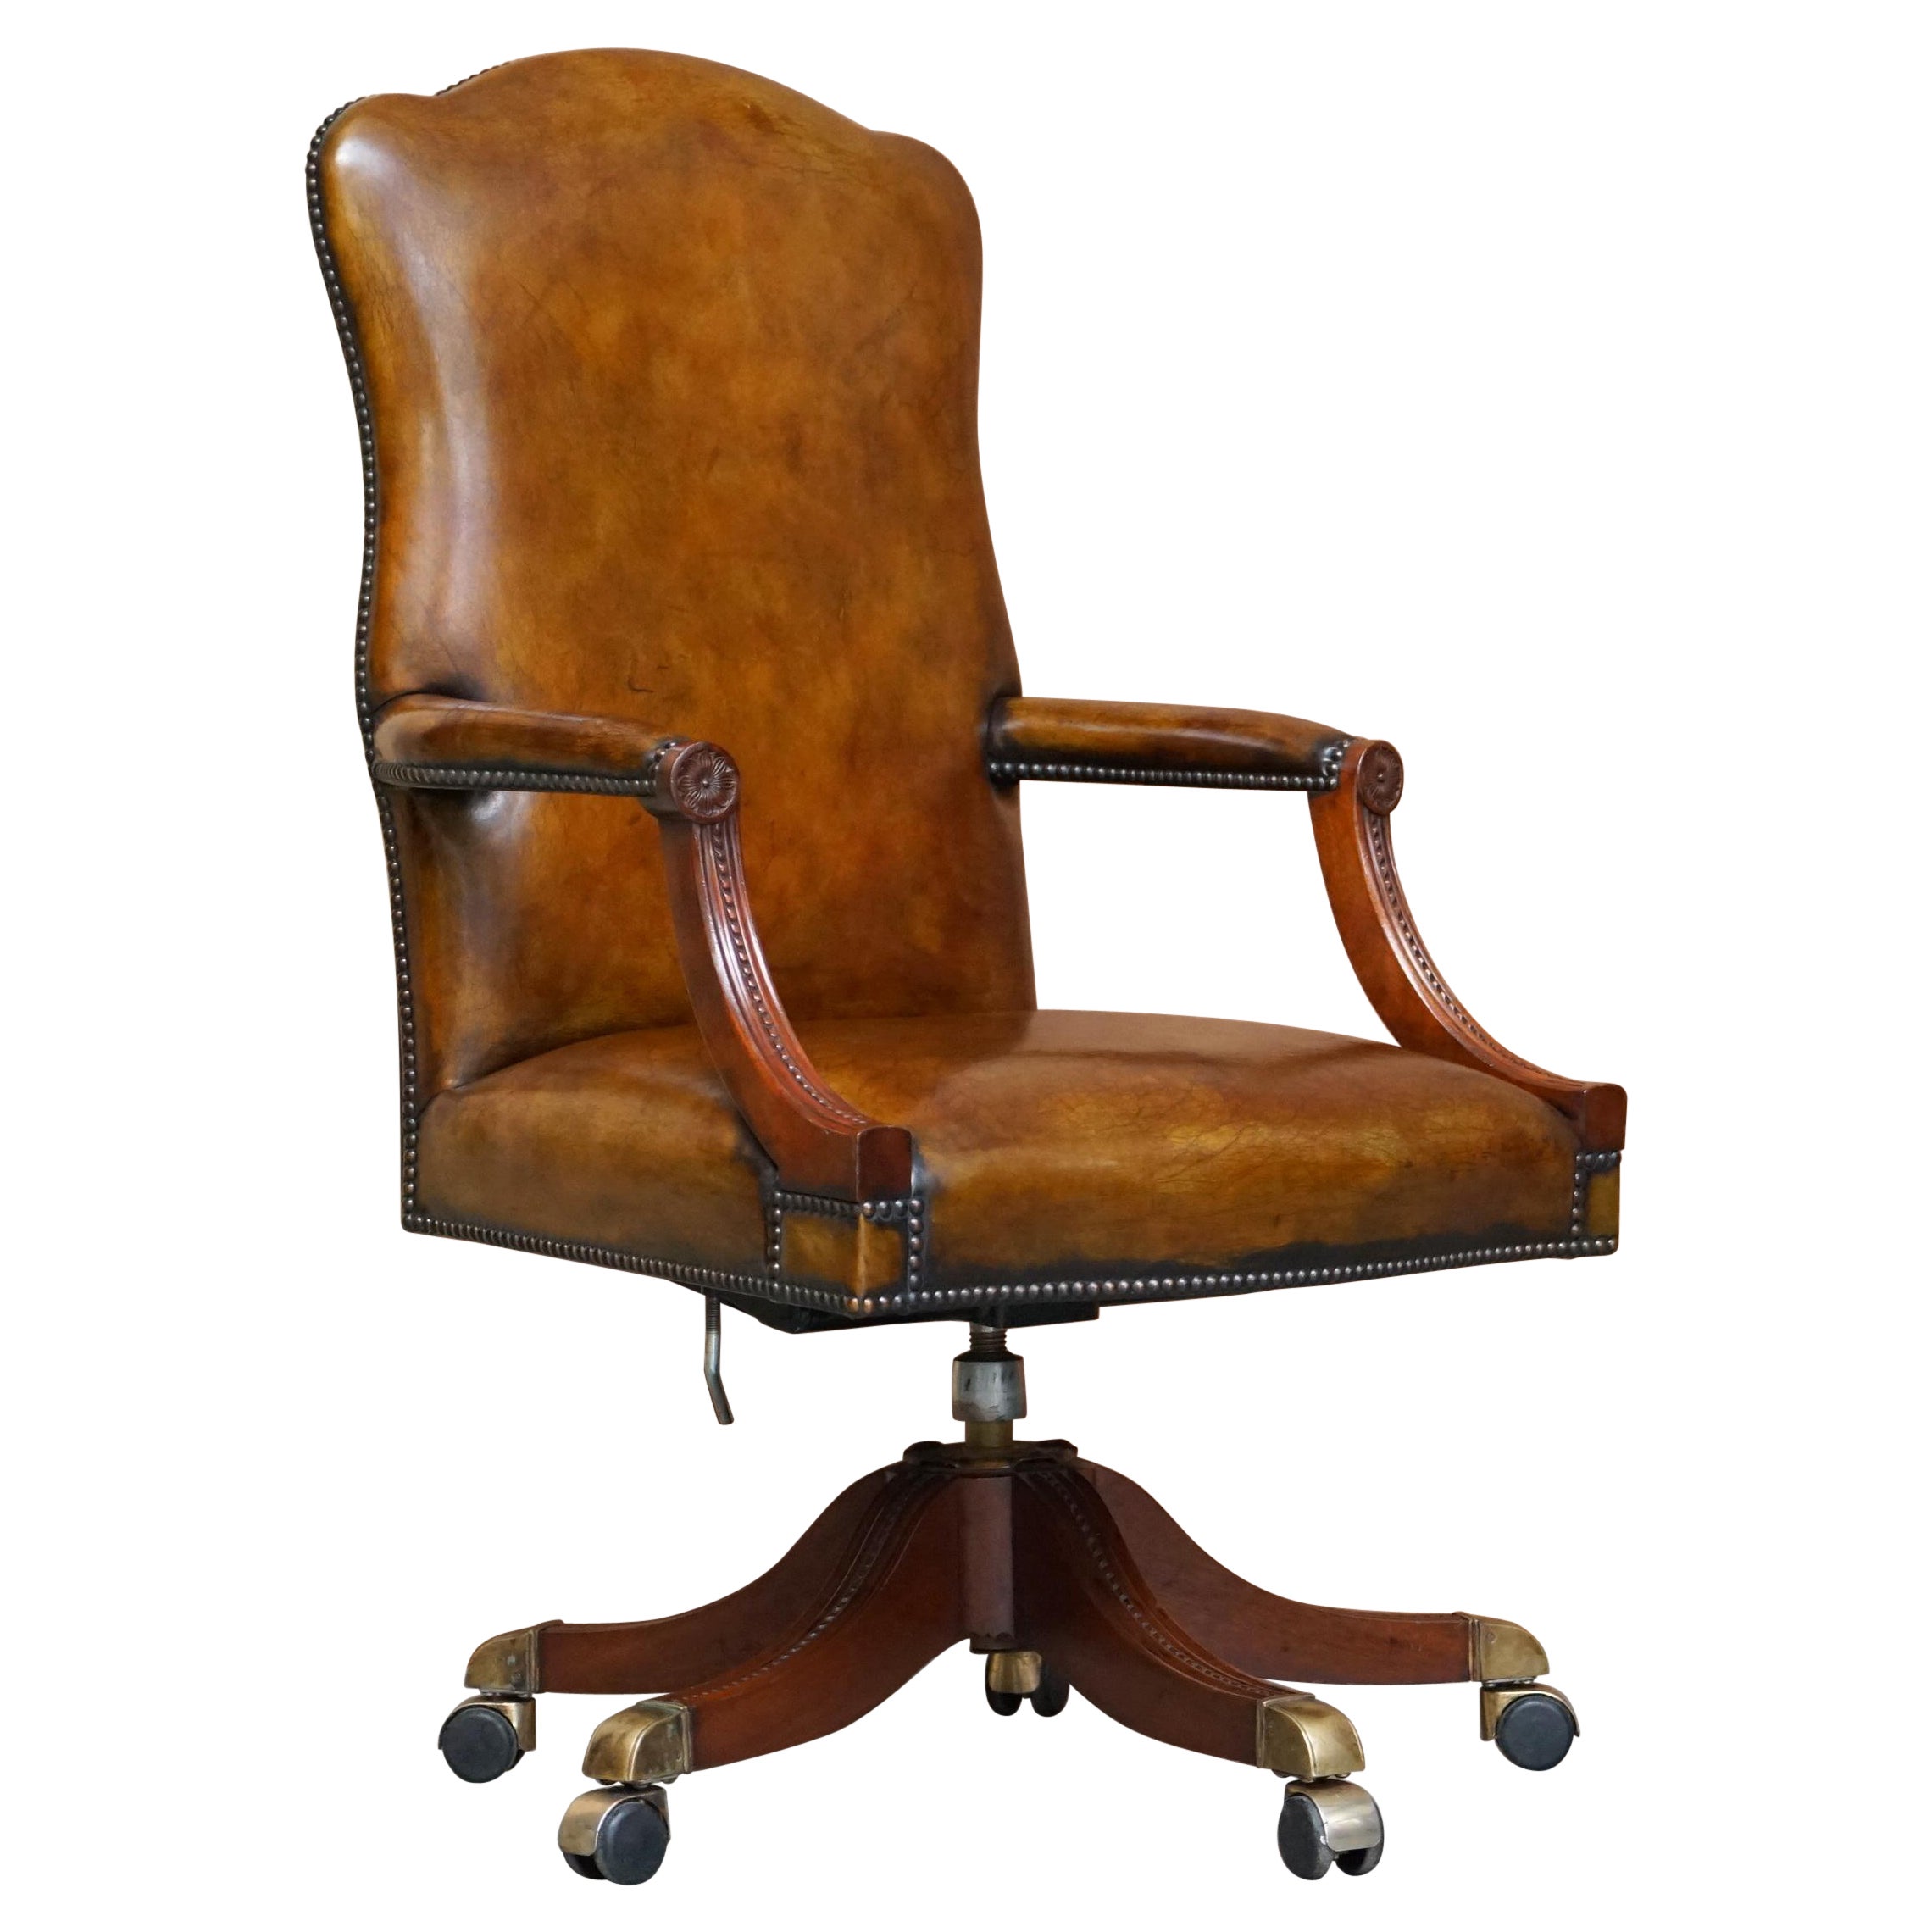 Ravissant fauteuil vintage restauré en cuir marron et cadre en chêne pour réalisateurs de films en vente